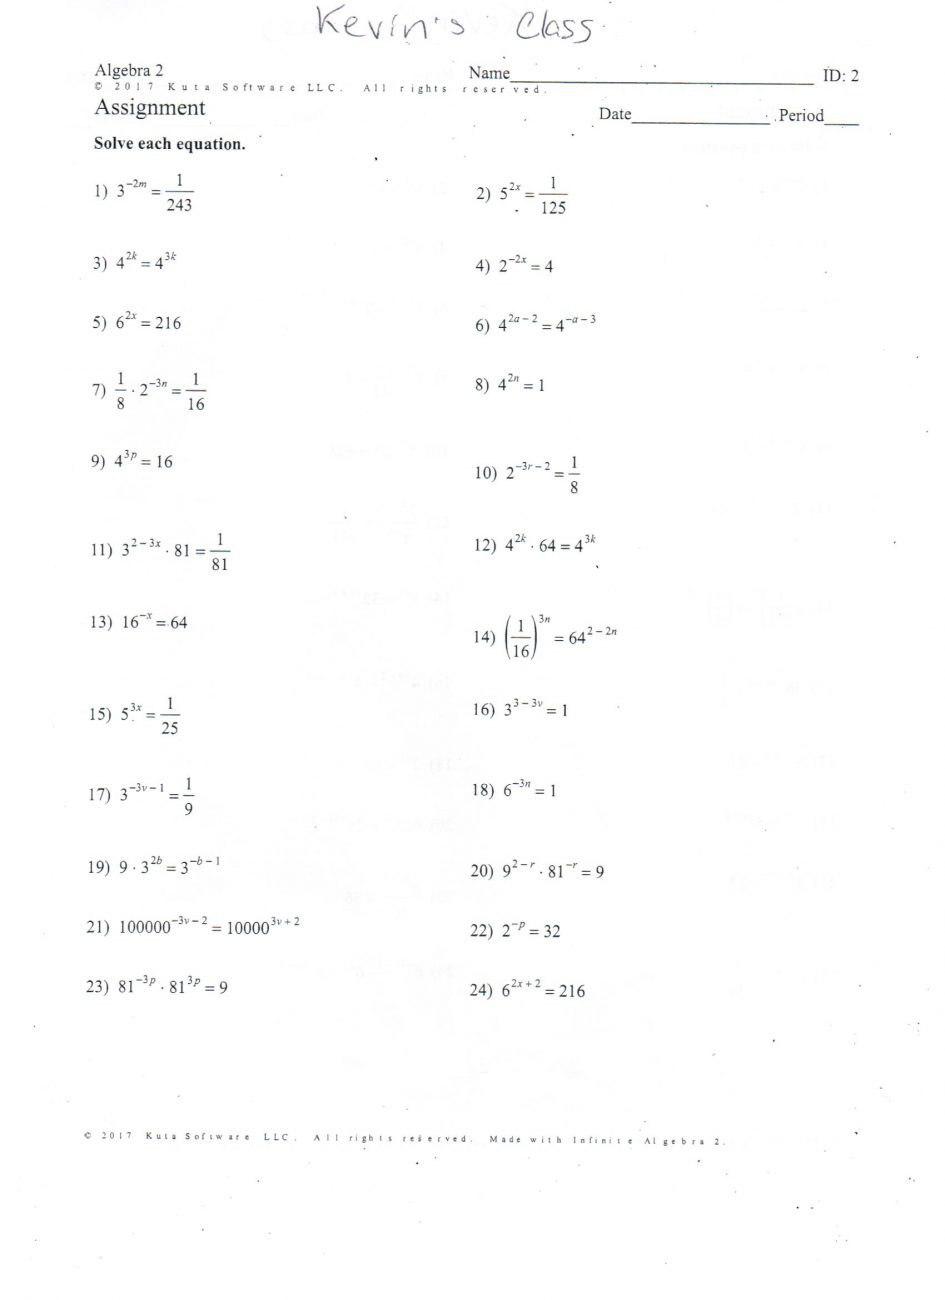 50-quadratic-functions-worksheet-answers